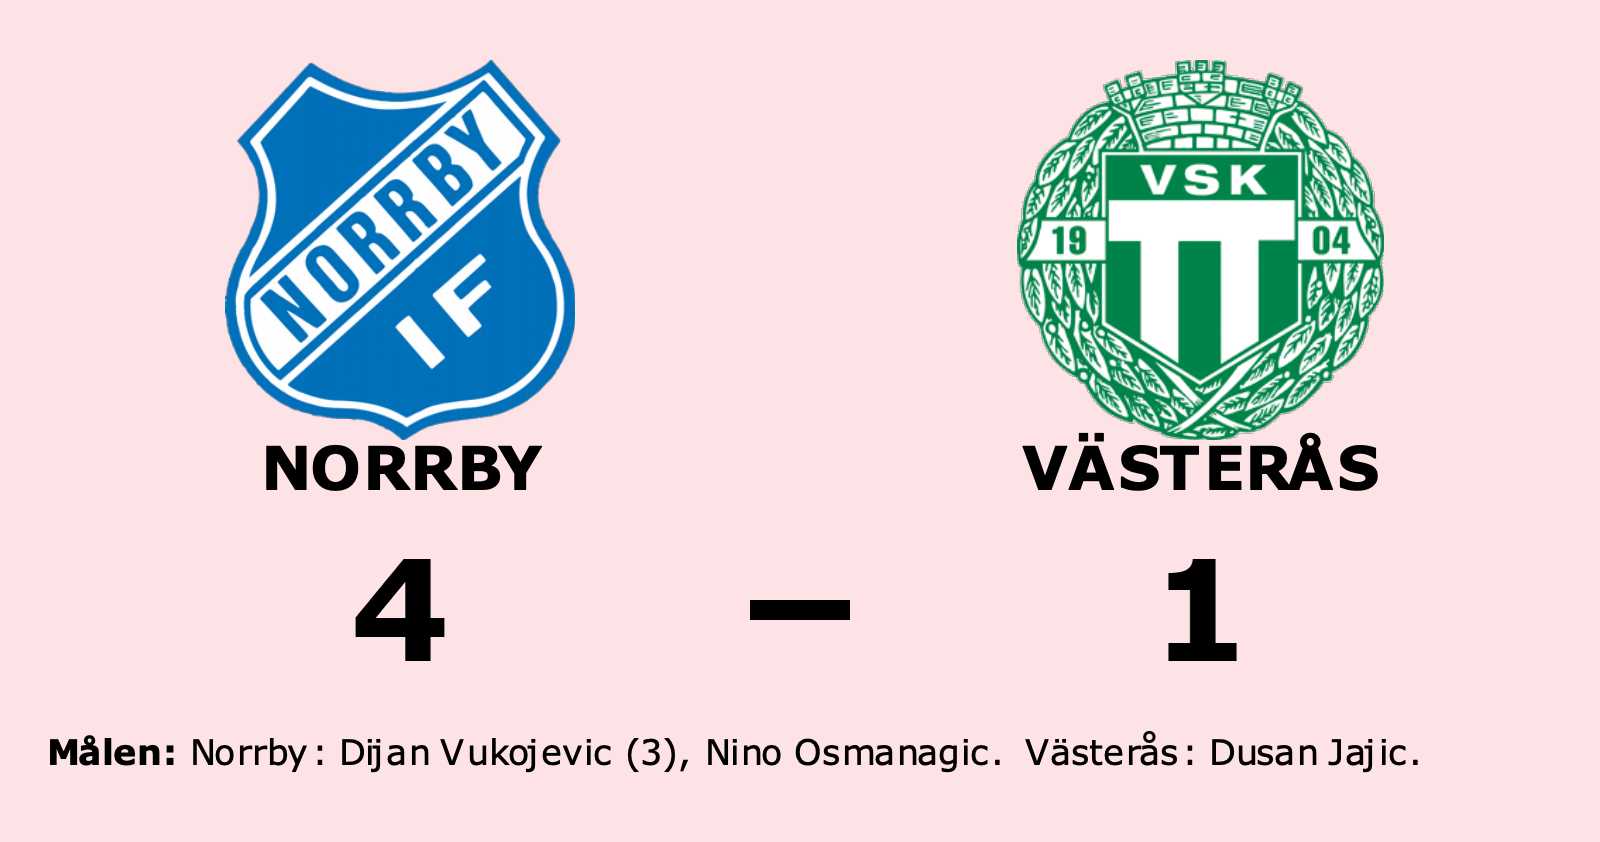 Västerås föll borta mot Norrby